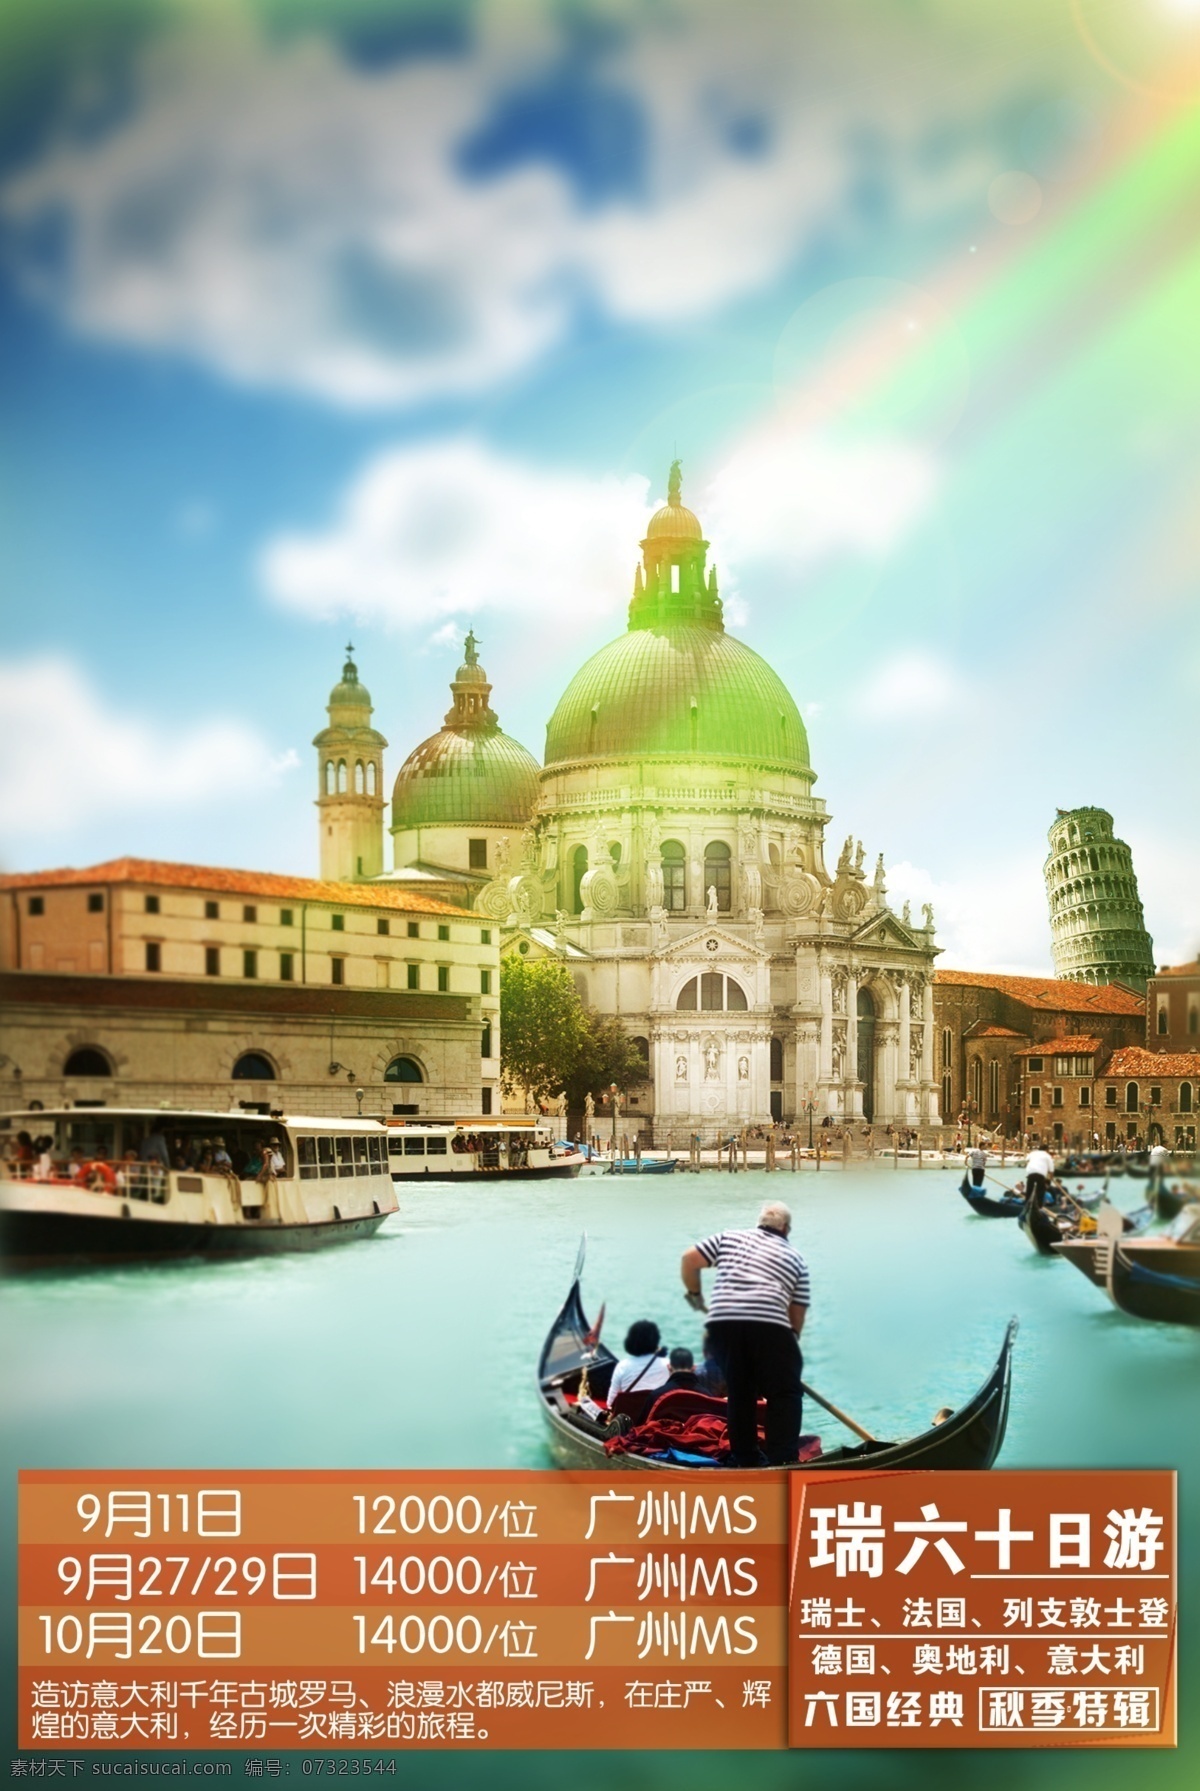 欧洲六国 欧洲旅游广告 瑞士旅游 欧洲广告 旅欧海报设计 旅游宣传单 宣传海报 法国旅游 意大利旅游 奥地利旅游 旅游海报 白色